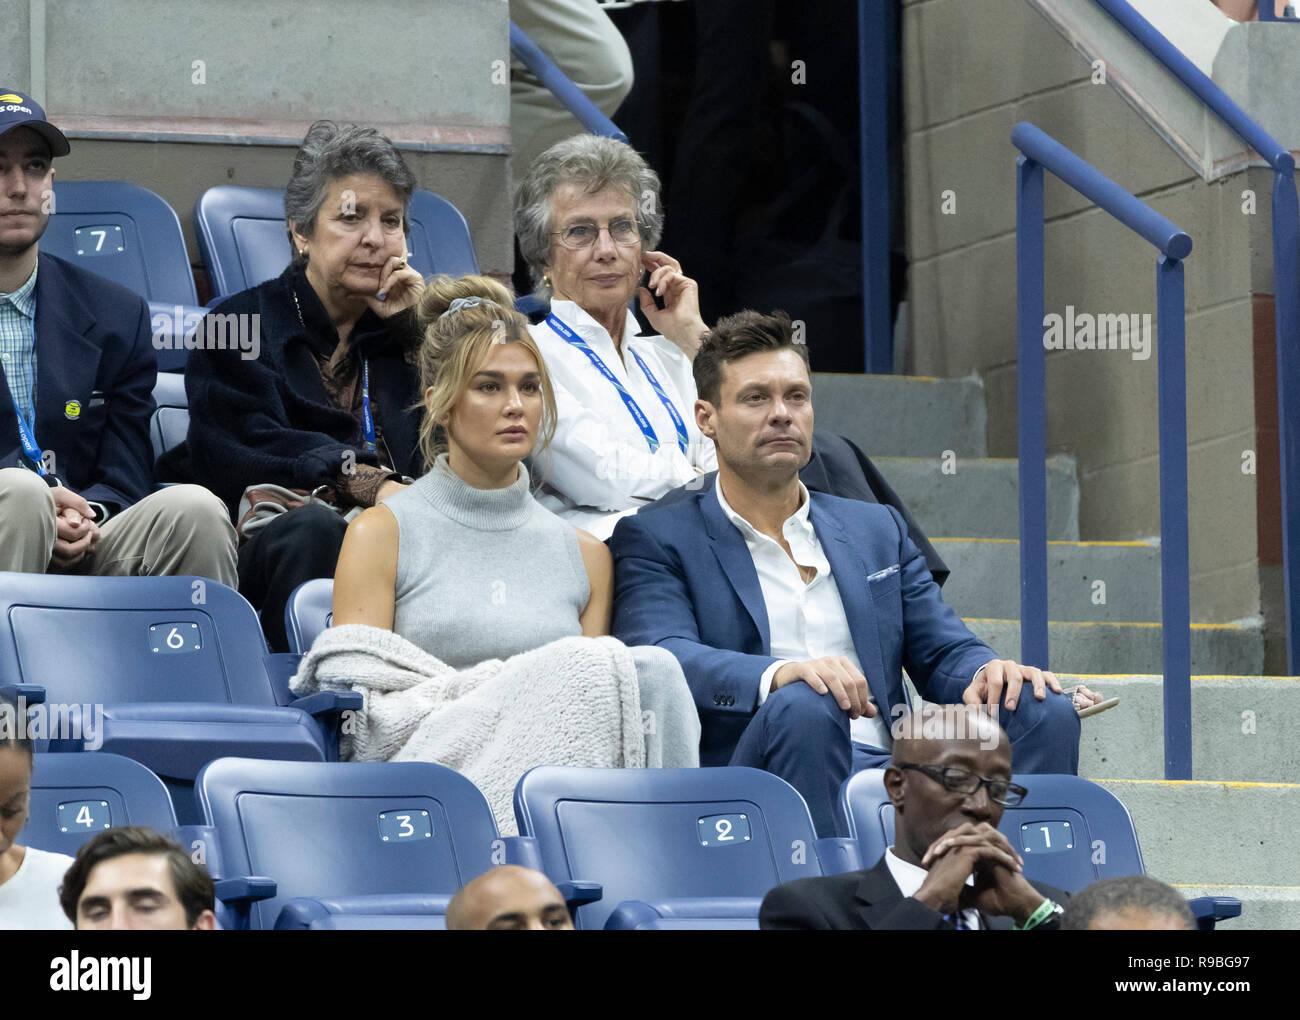 New York, NY - 9 septembre 2018 : Shayna Taylor, Ryan Seacrest assister à men's single final de l'US Open 2018 entre la Serbie et de Novak Djokovic, Juan Martin del Potro l'Argentine à l'USTA Billie Jean King National Tennis Center Banque D'Images